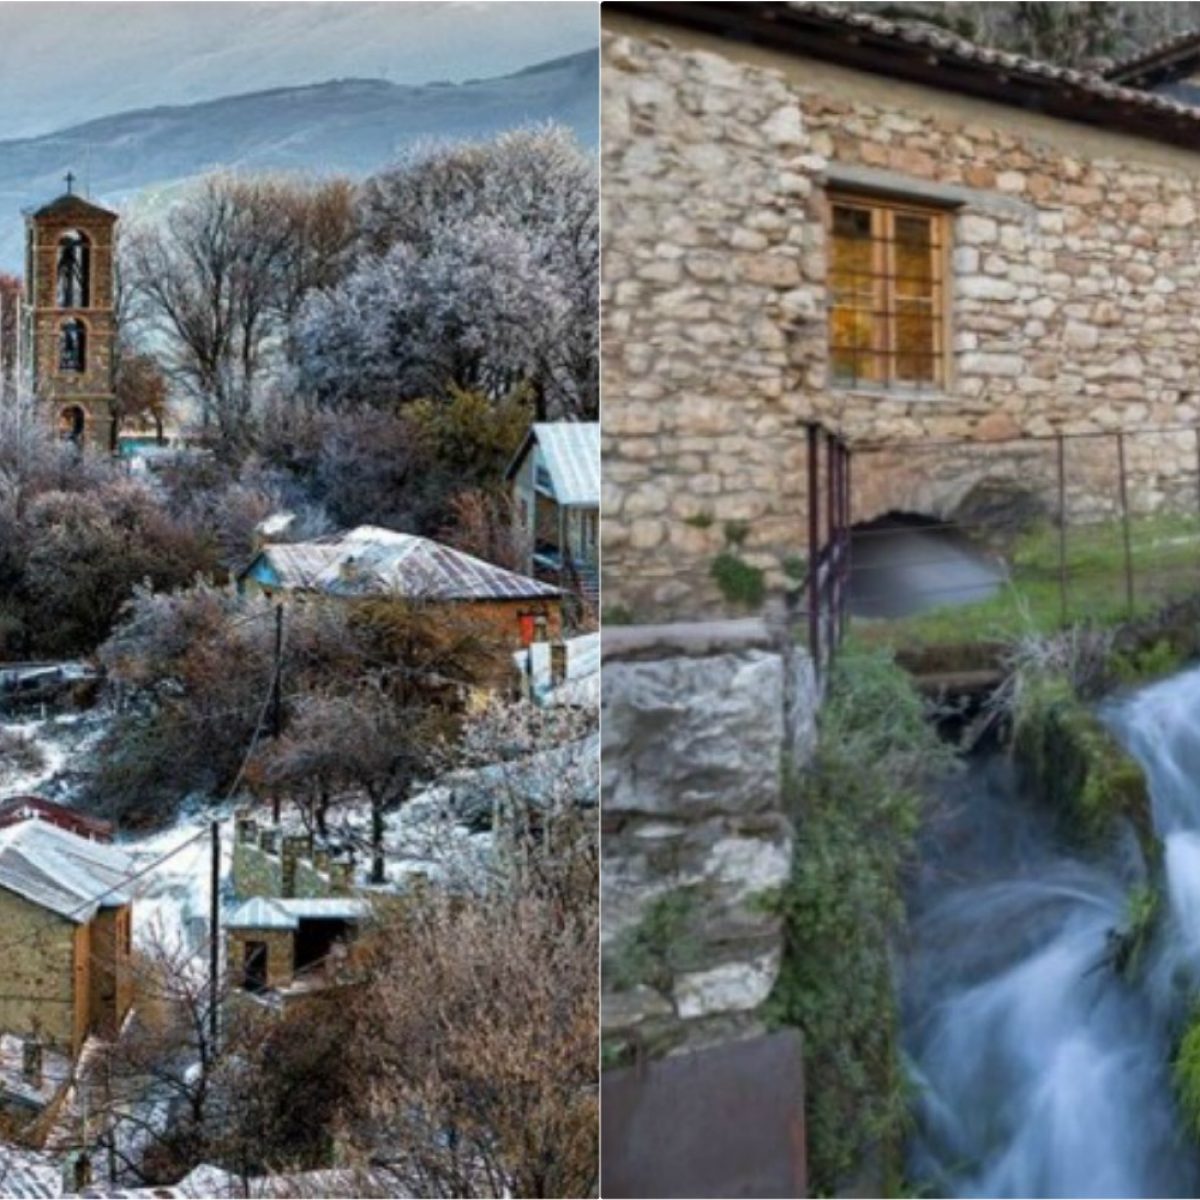 12 ελληνικά χωριά που πρέπει να επισκεφτείς οπωσδήποτε μια φορά στη ζωή σου